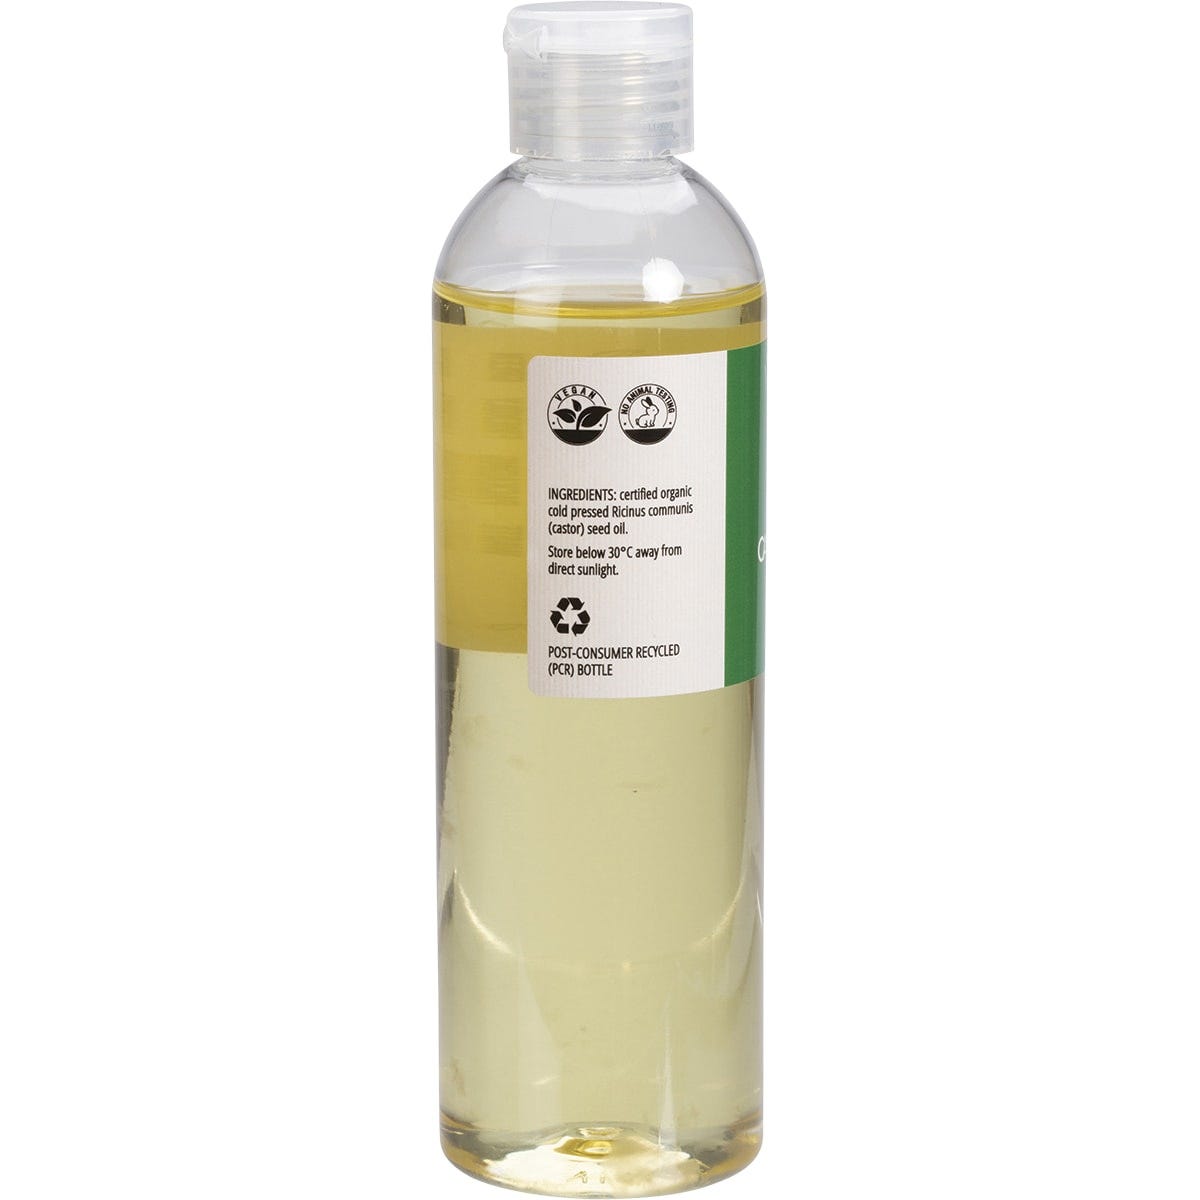 Vrindavan Castor Oil 100% Natural